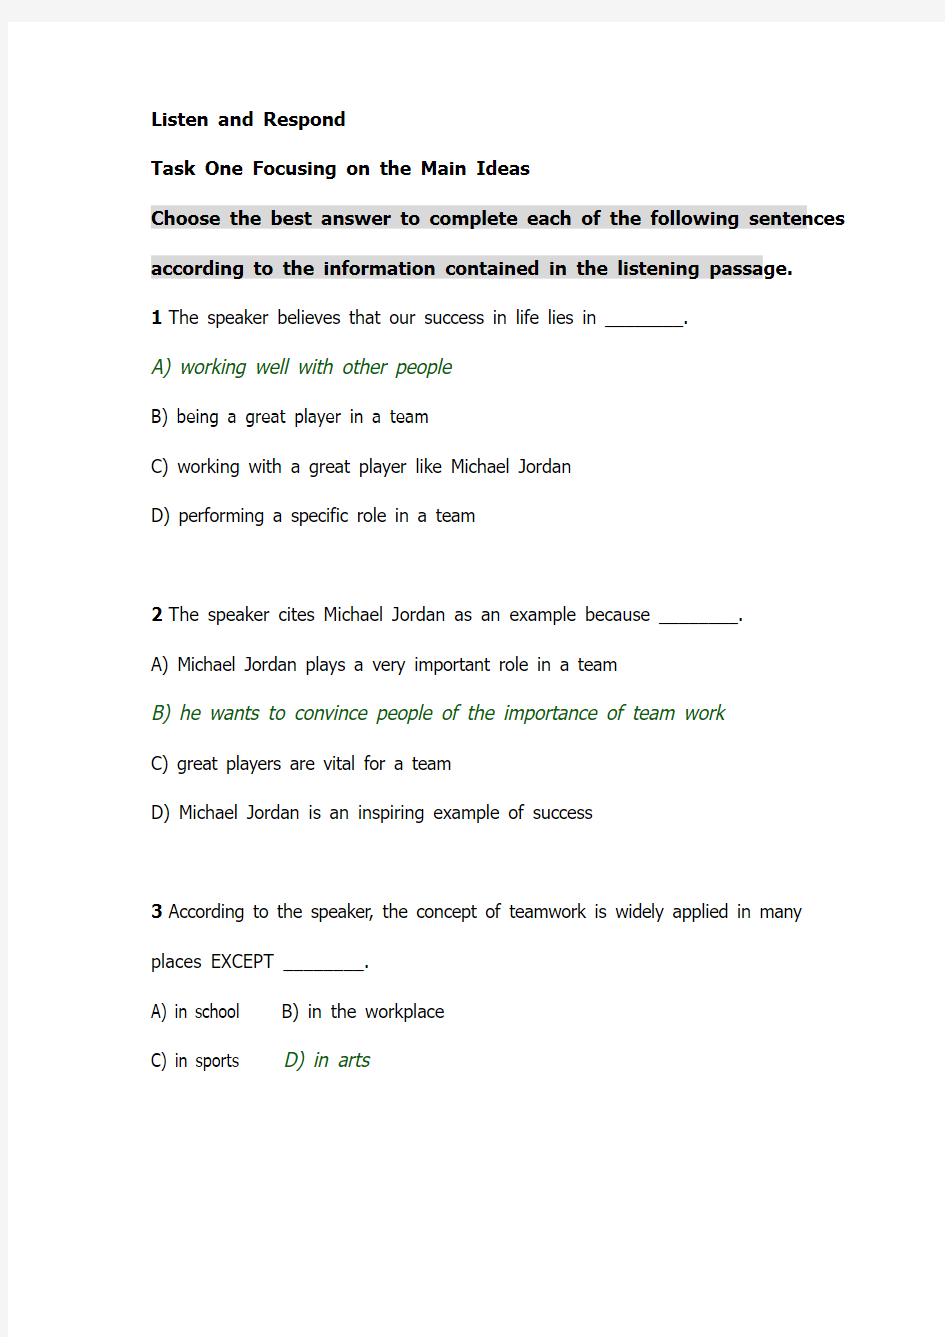 新世纪大学英语综合教程第二册Unit 6答案